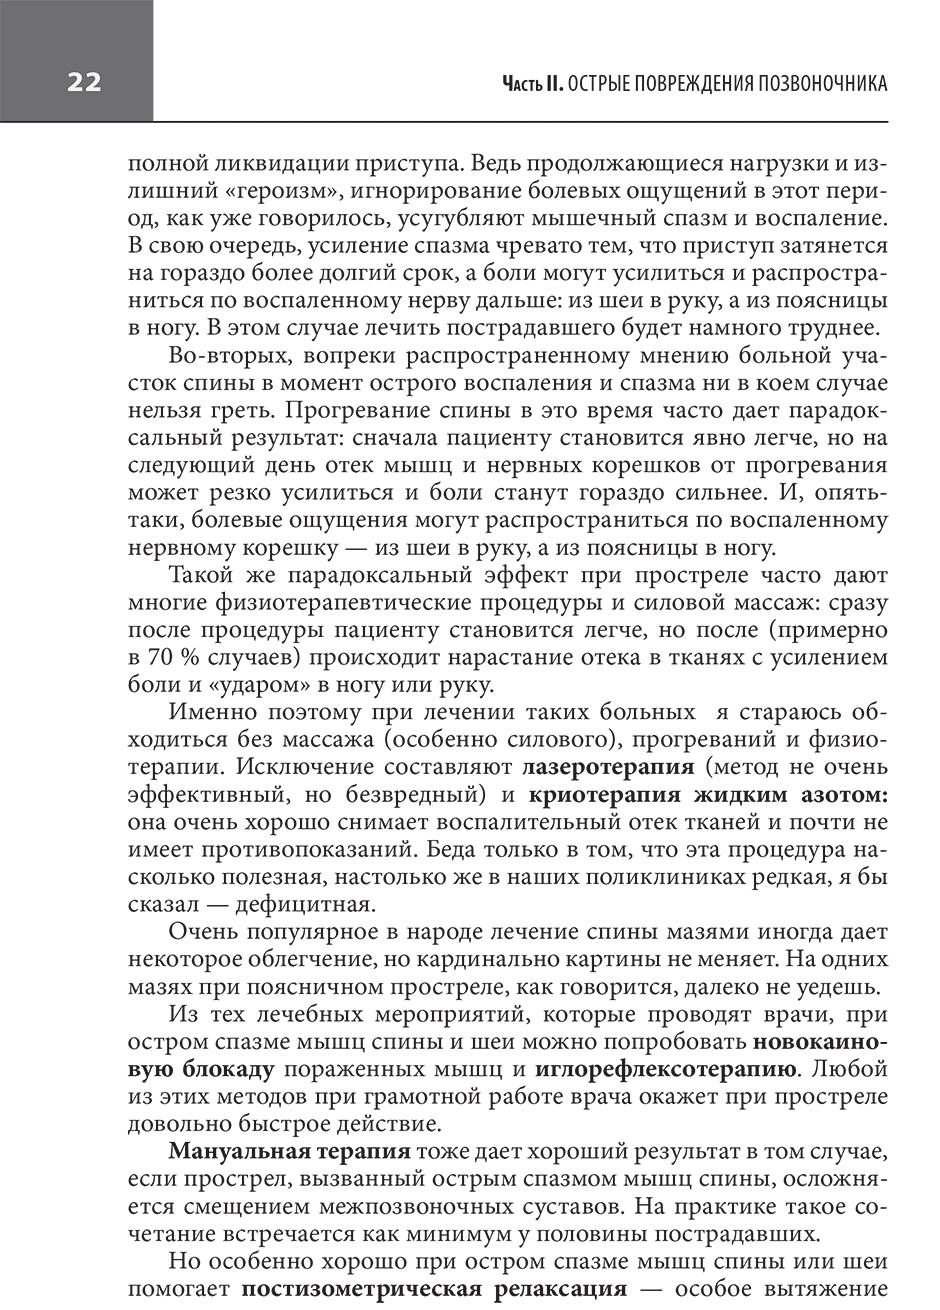 Пример страницы из книги "Большая книга здоровья доктора Евдокименко" - П. В. Евдокименко